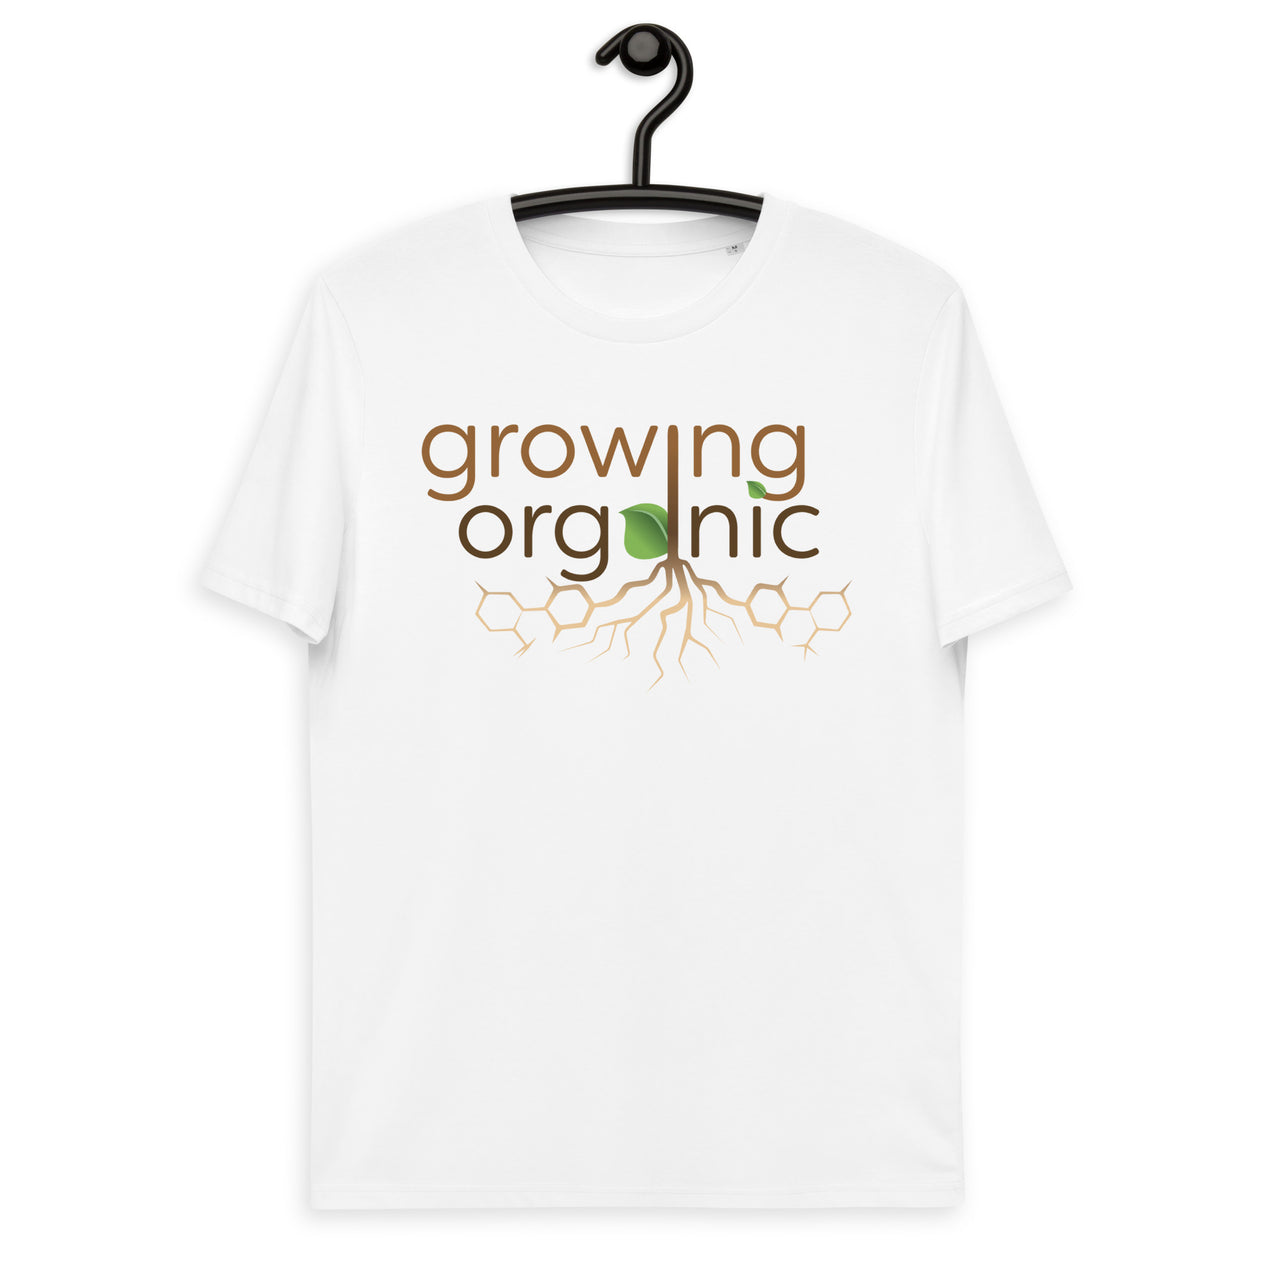 Growing Organic - 100% Organic Cotton T-Shirt